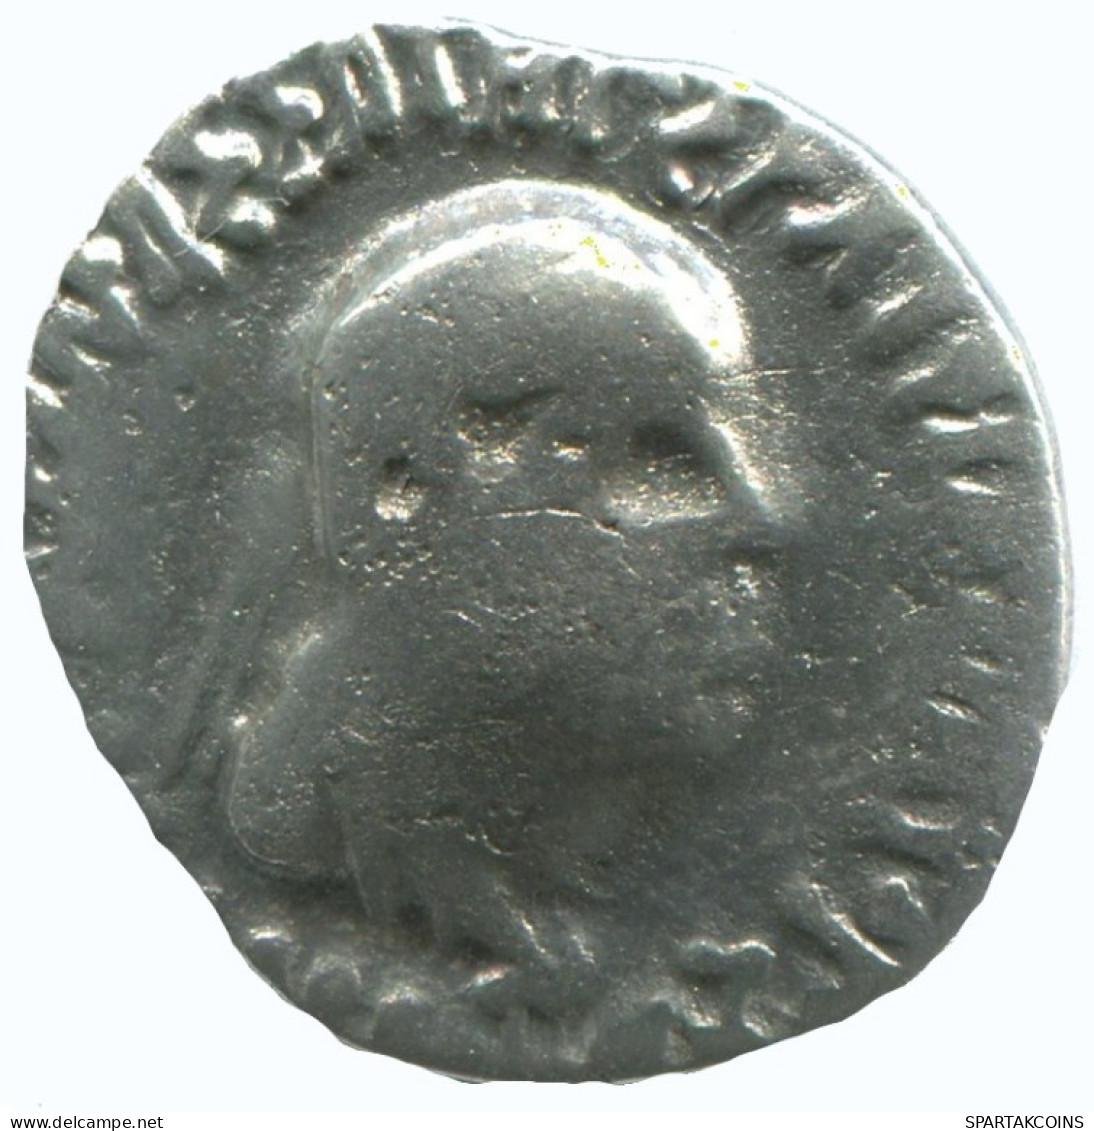 BAKTRIA APOLLODOTOS II SOTER PHILOPATOR MEGAS AR DRACHM 2.2g/16mm #AA304.40.F.A - Griechische Münzen